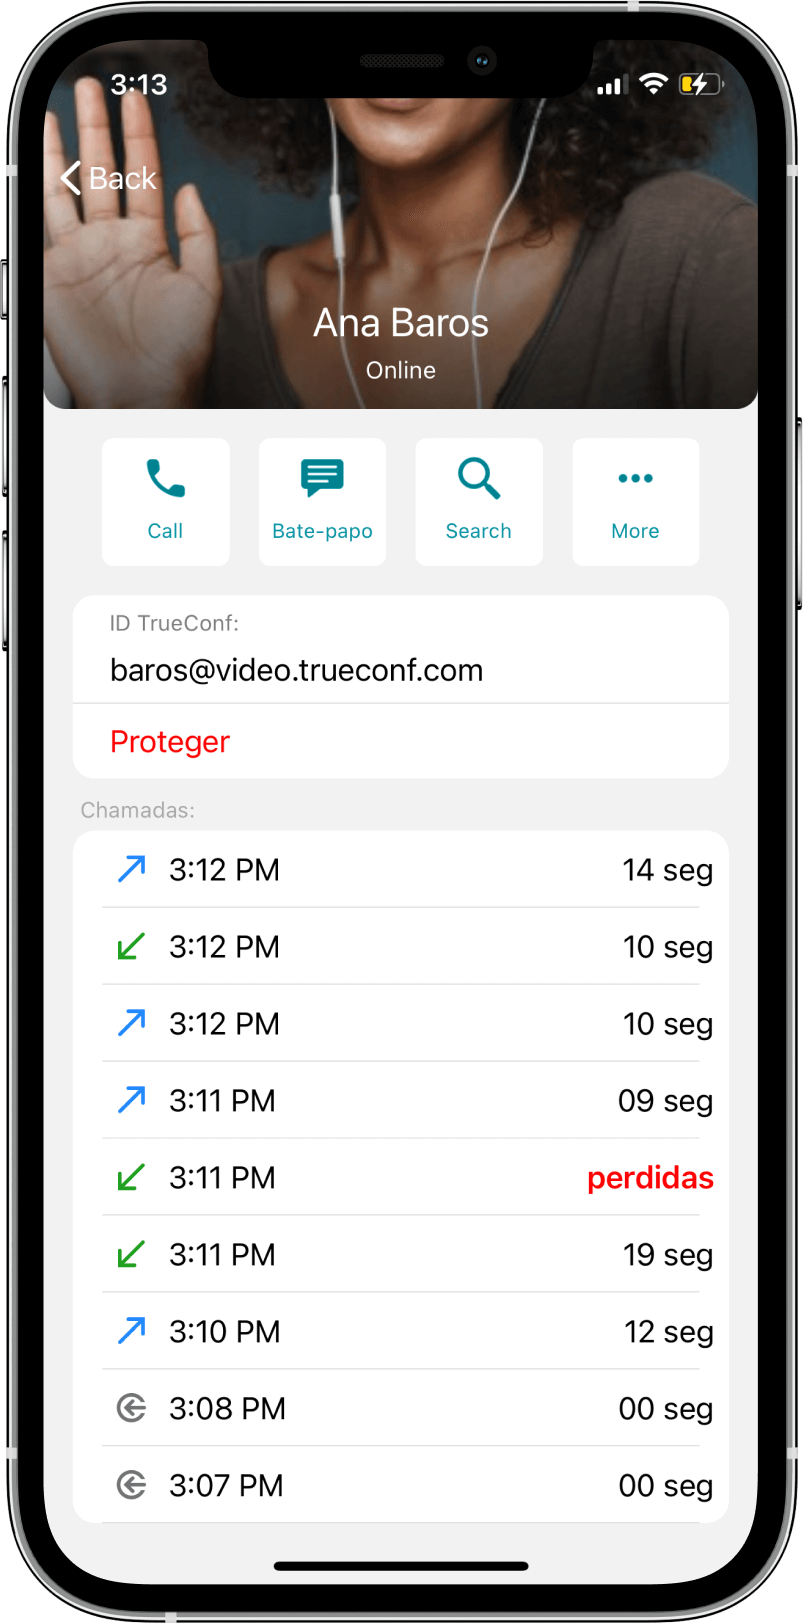 TrueConf 3.3 para iOS: nova interface do usuário, modo de reunião inteligente, acesso offline a chats, contatos e histórico de chamadas 16